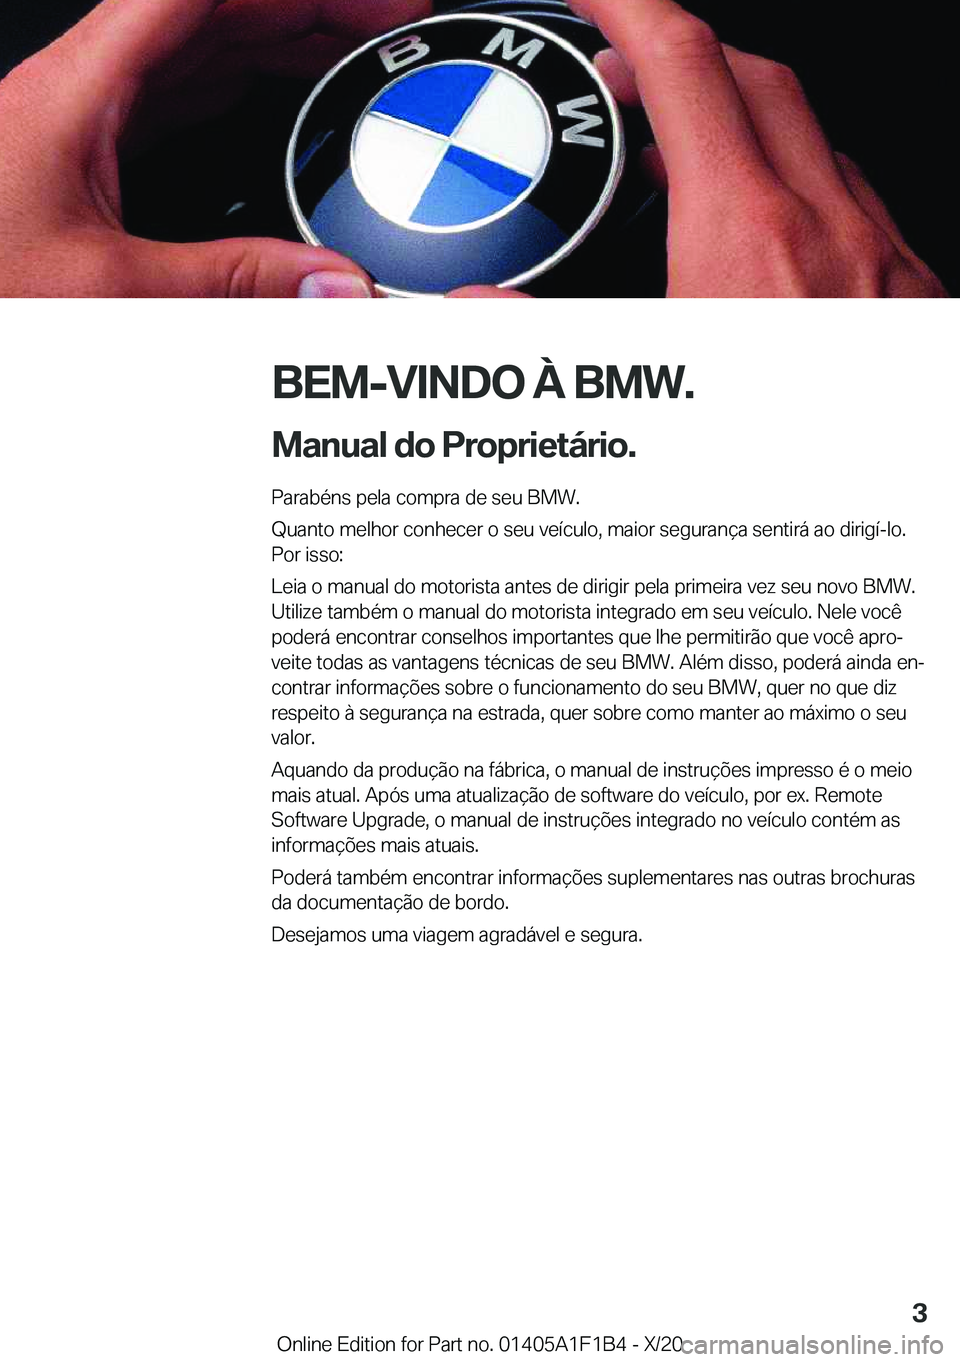 BMW M5 2021  Manual do condutor (in Portuguese) �B�E�M�-�V�I�N�D�O��À��B�M�W�.
�M�a�n�u�a�l��d�o��P�r�o�p�r�i�e�t�á�r�i�o�. �P�a�r�a�b�é�n�s��p�e�l�a��c�o�m�p�r�a��d�e��s�e�u��B�M�W�.
�Q�u�a�n�t�o��m�e�l�h�o�r��c�o�n�h�e�c�e�r��o��s